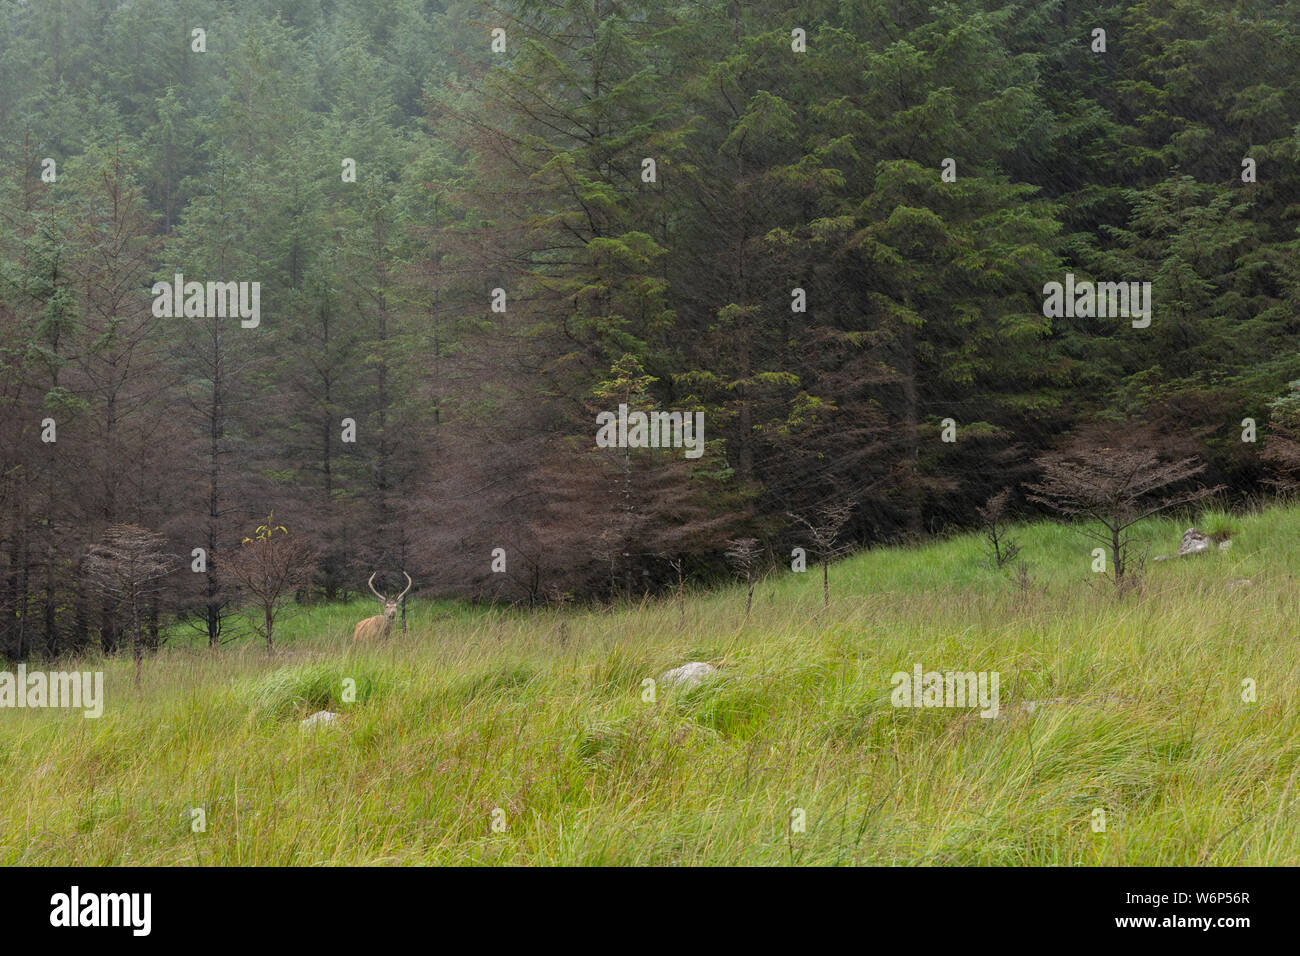 wild deer in Glen Etive, Scotland Stock Photo